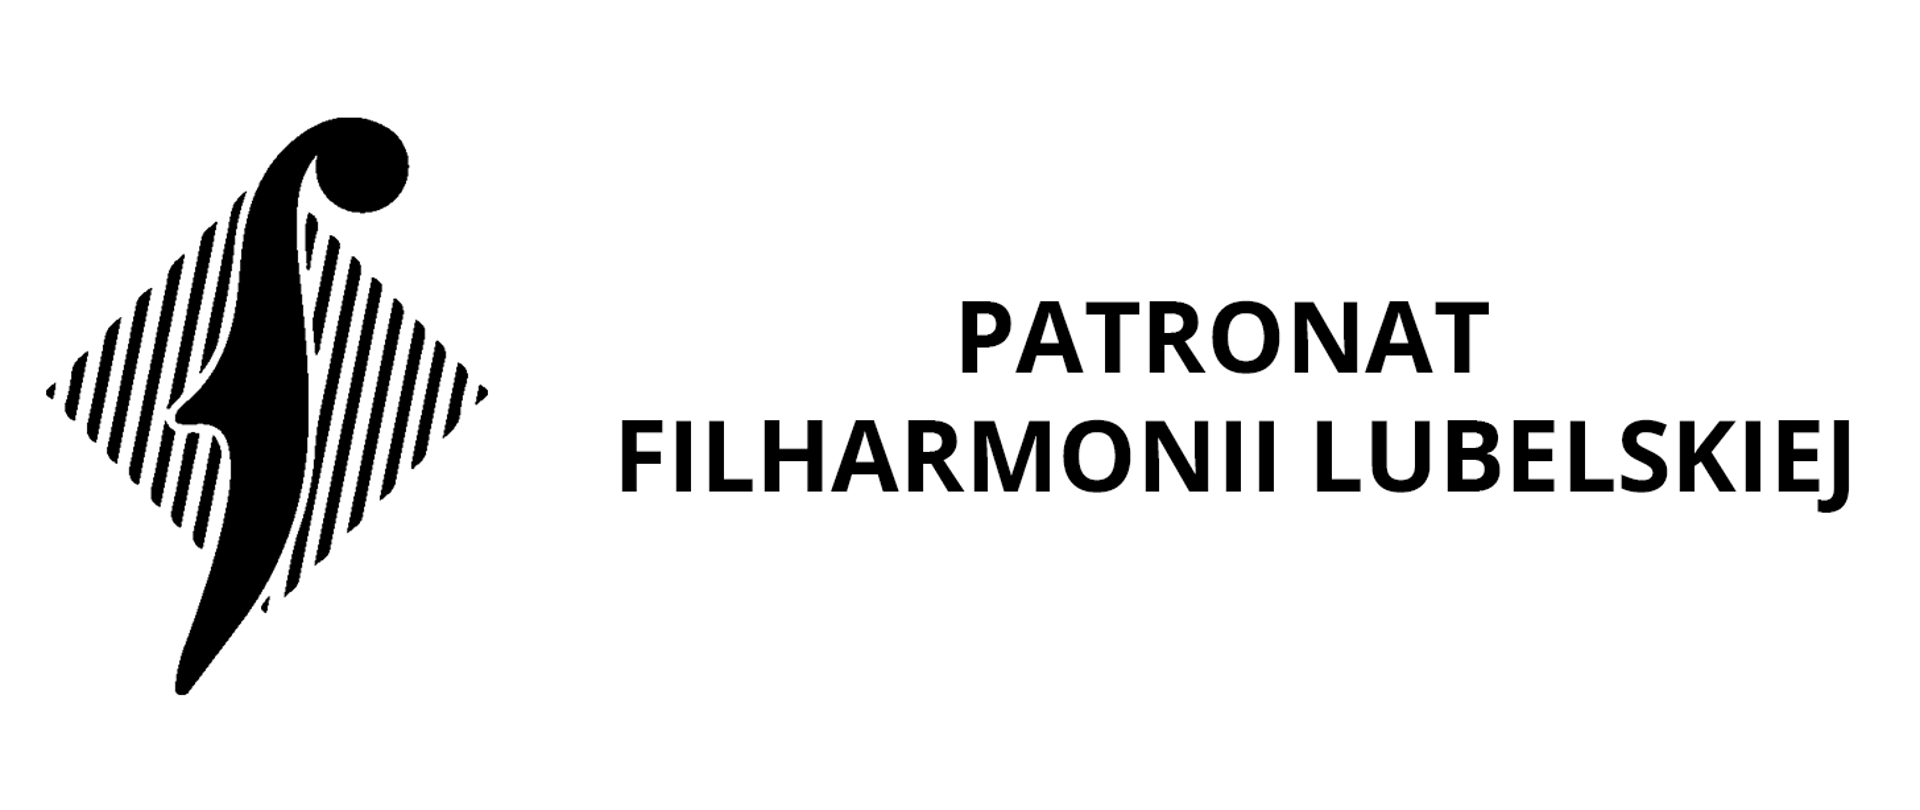 Czarne logo Filharmonii Lubelskiej przedstawiający symbol muzyczny na tle czarno-białego kwadratu przechylonego o 45 stopni oraz napis Patronat Filharmonii Lubelskiej